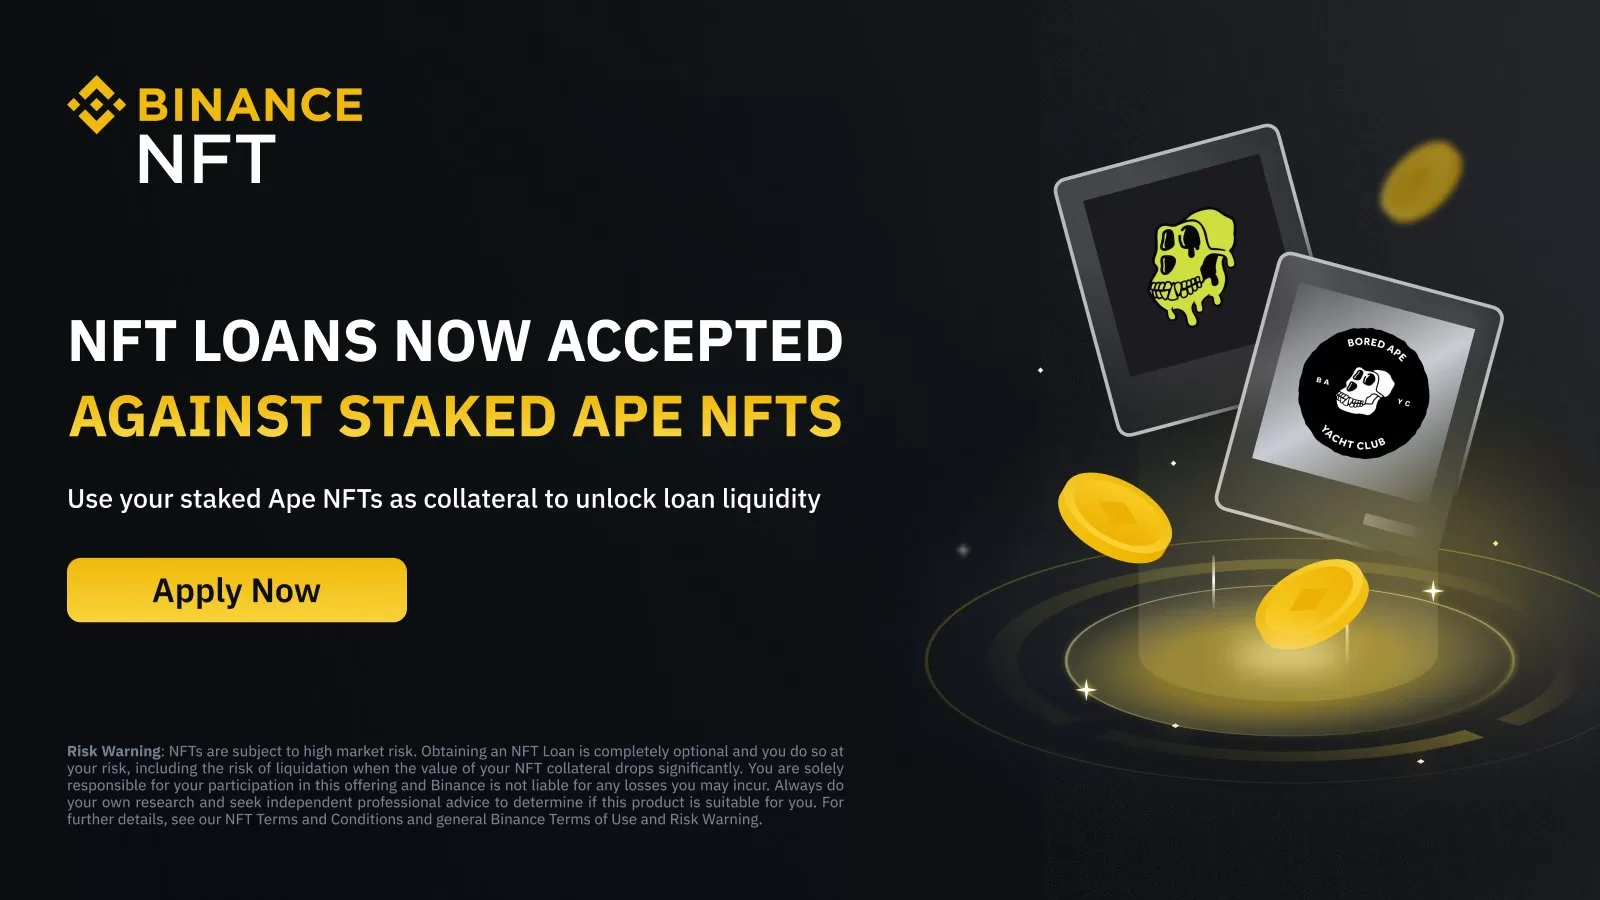 Binance NFT cho phép Ape NFT được đặt cọc làm tài sản thế chấp cho khoản vay 